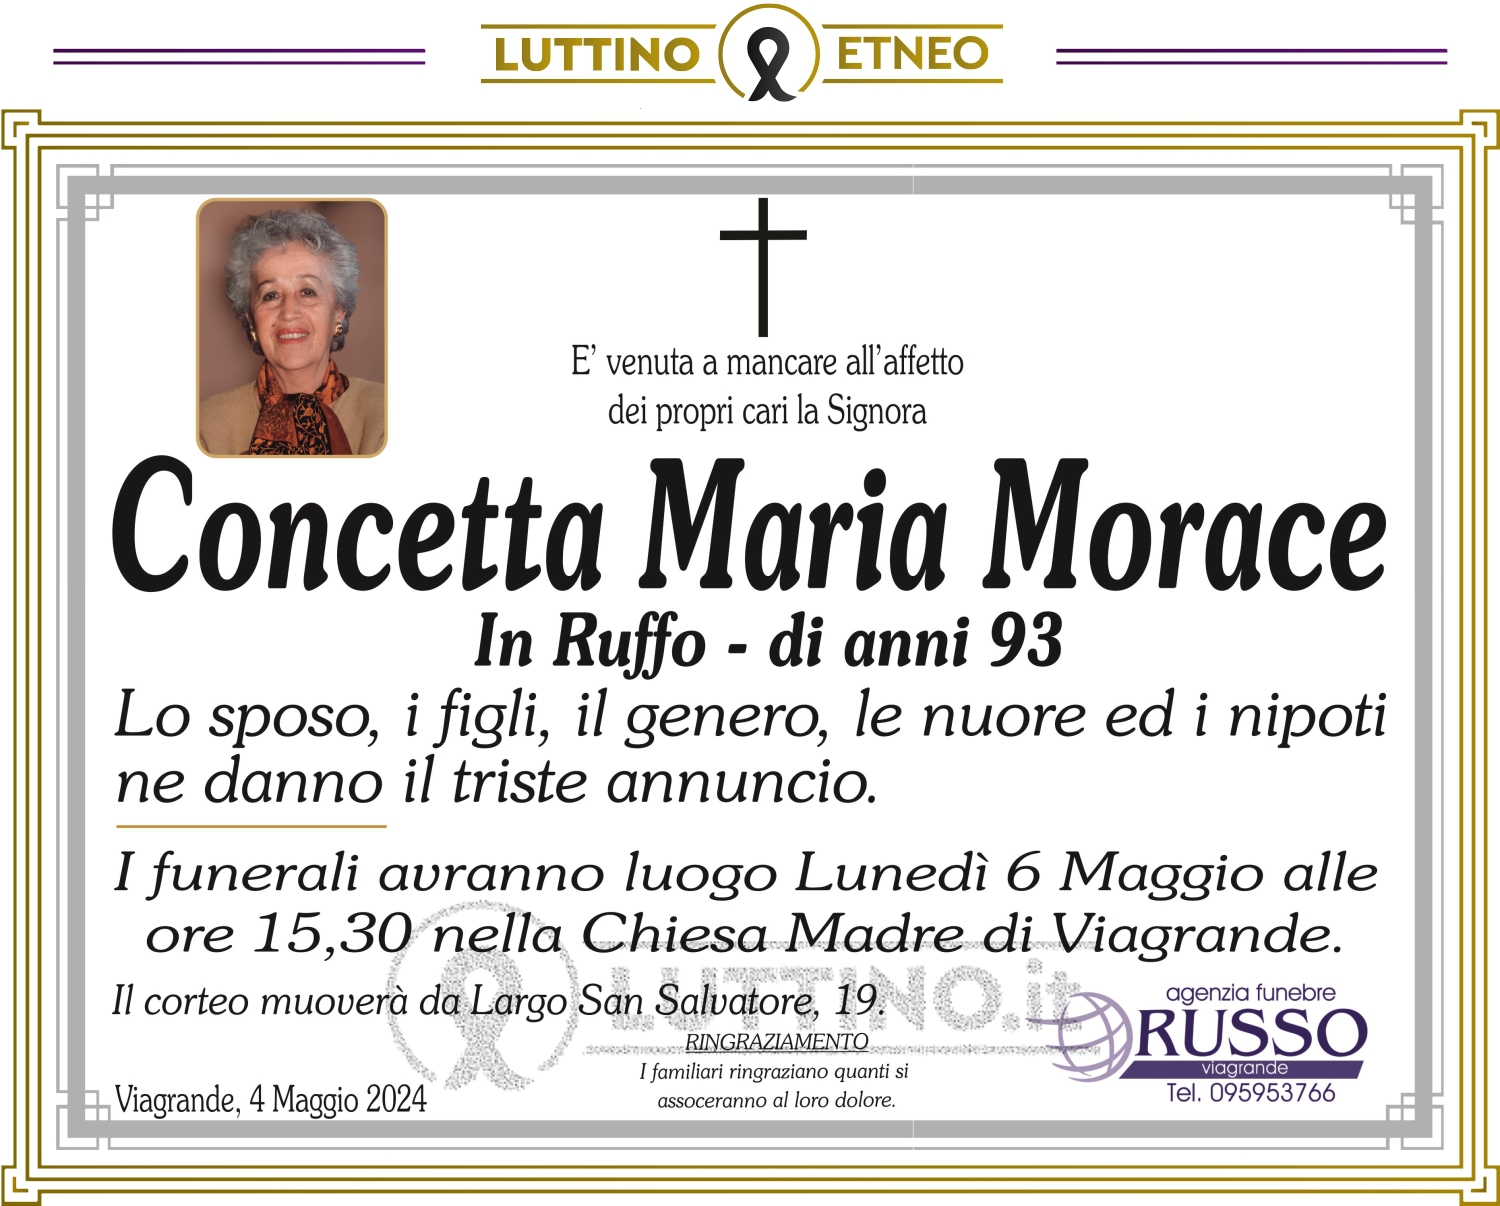 Concetta Maria Morace